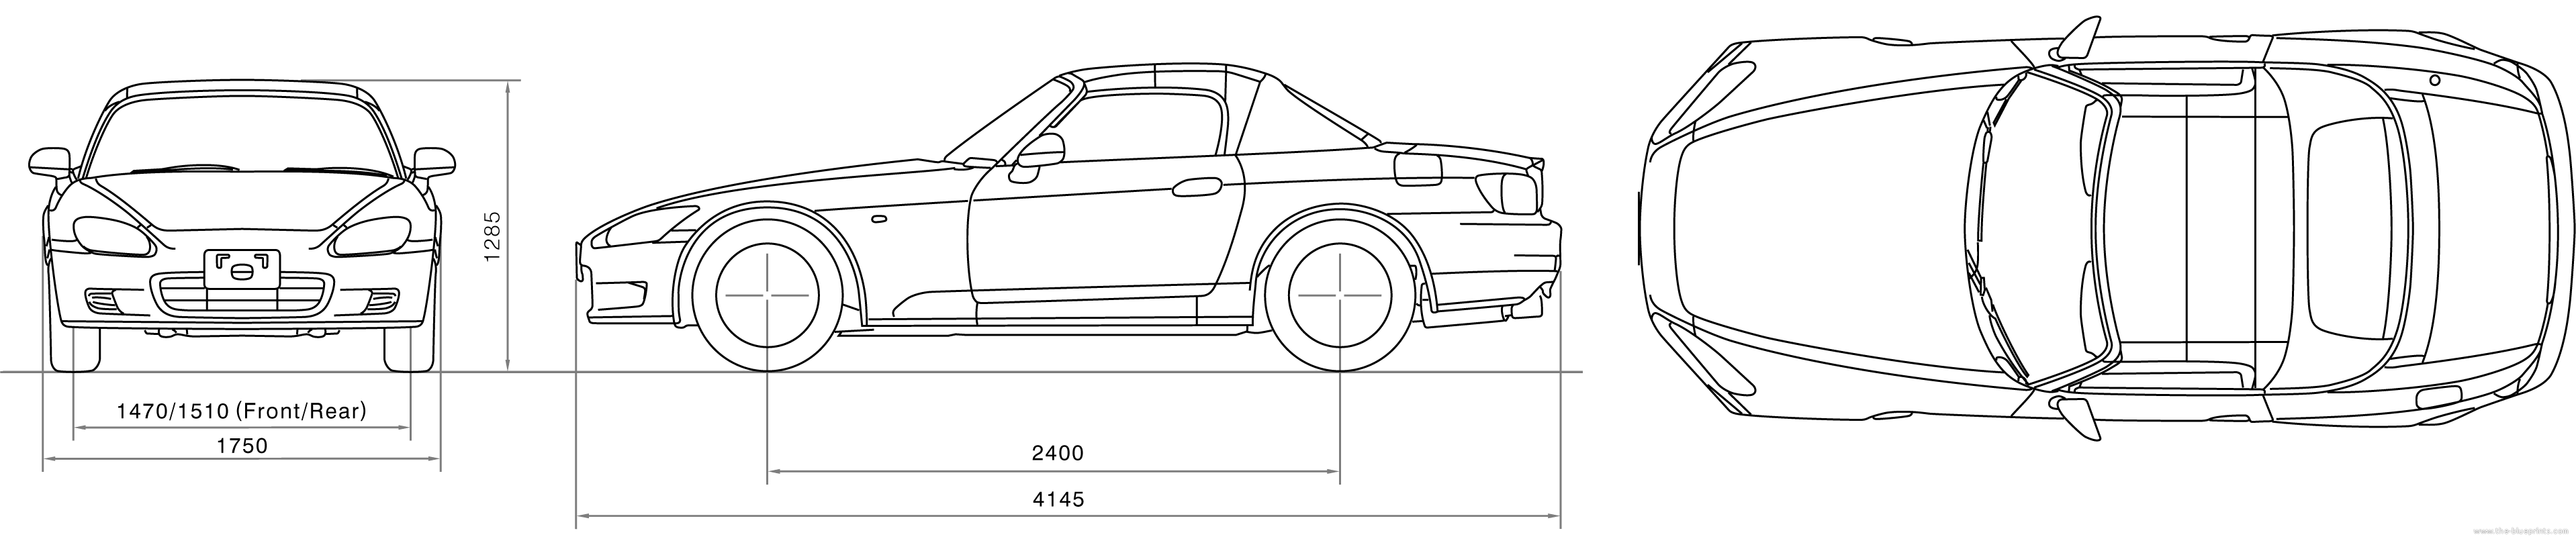 Honda s2000 blueprints #6